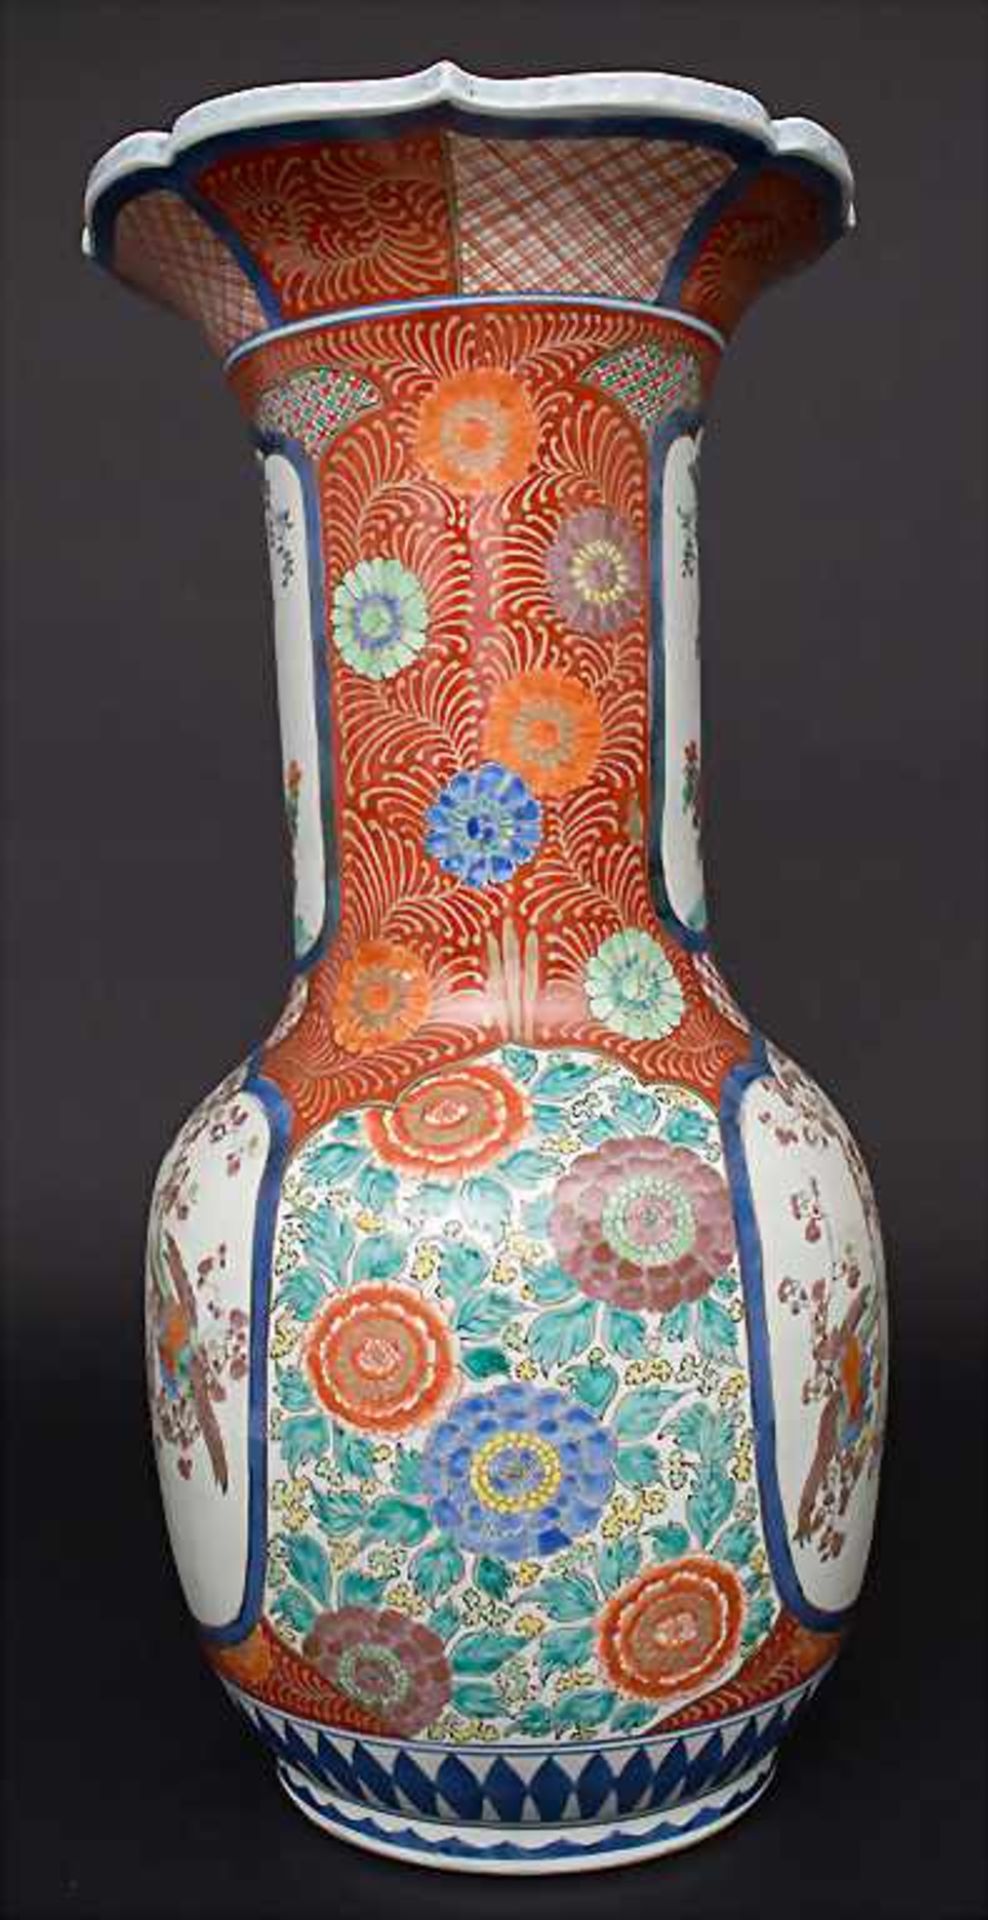 Bodenvase mit Vogel-Blütendekor / A floor vase with birds and flowers, China, um 1900 - Image 2 of 4